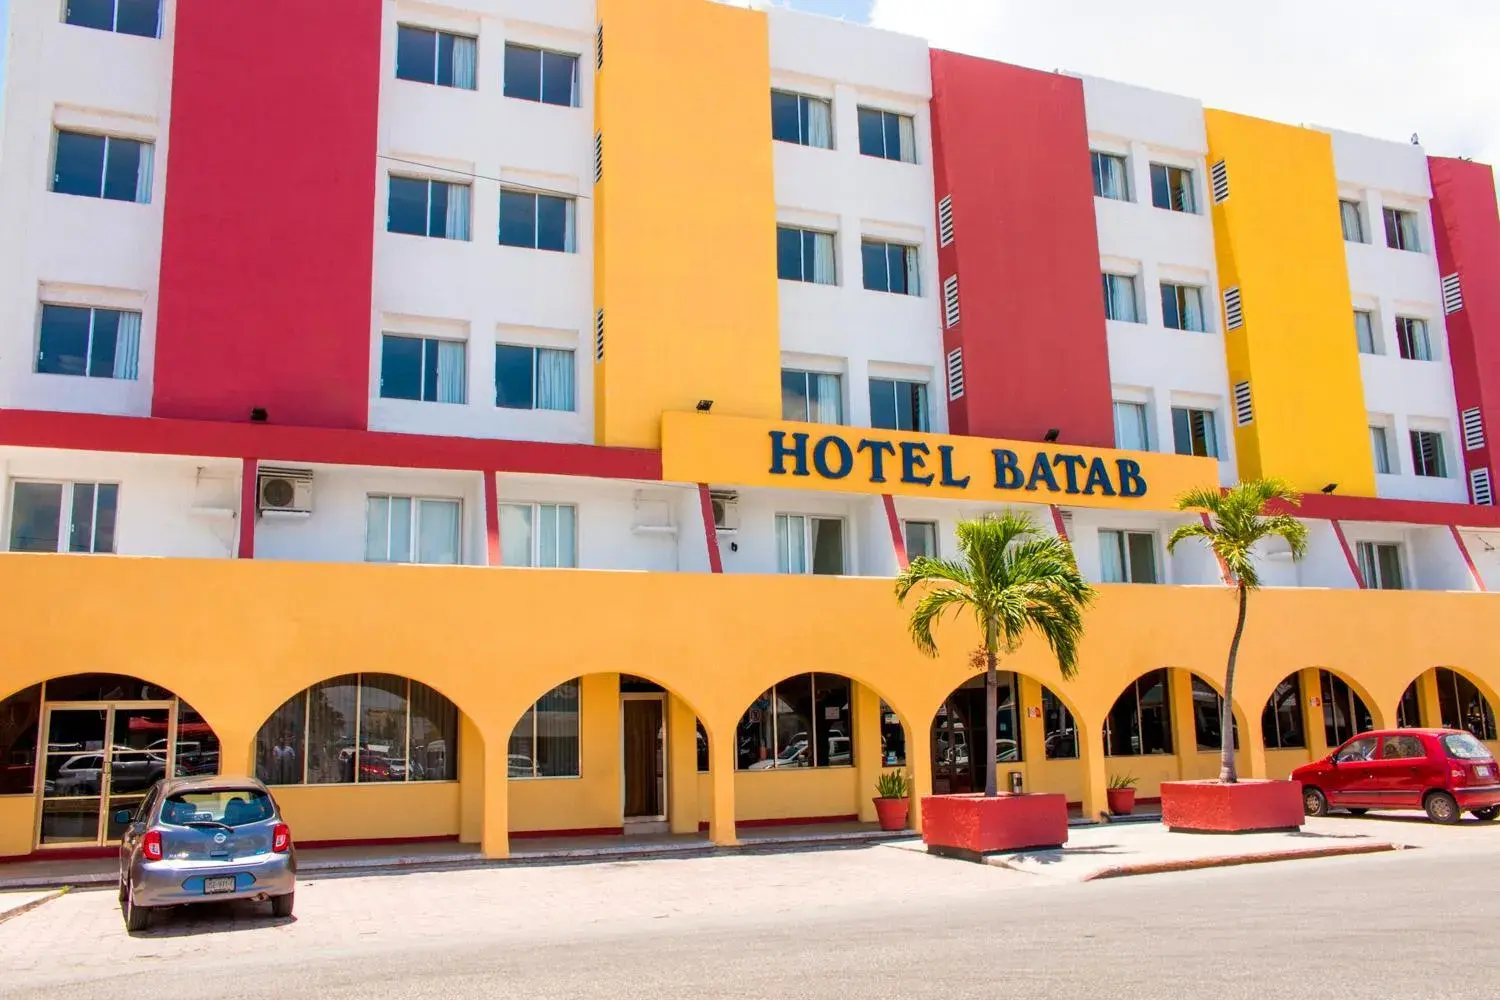 Facade/entrance, Property Building in Hotel Batab